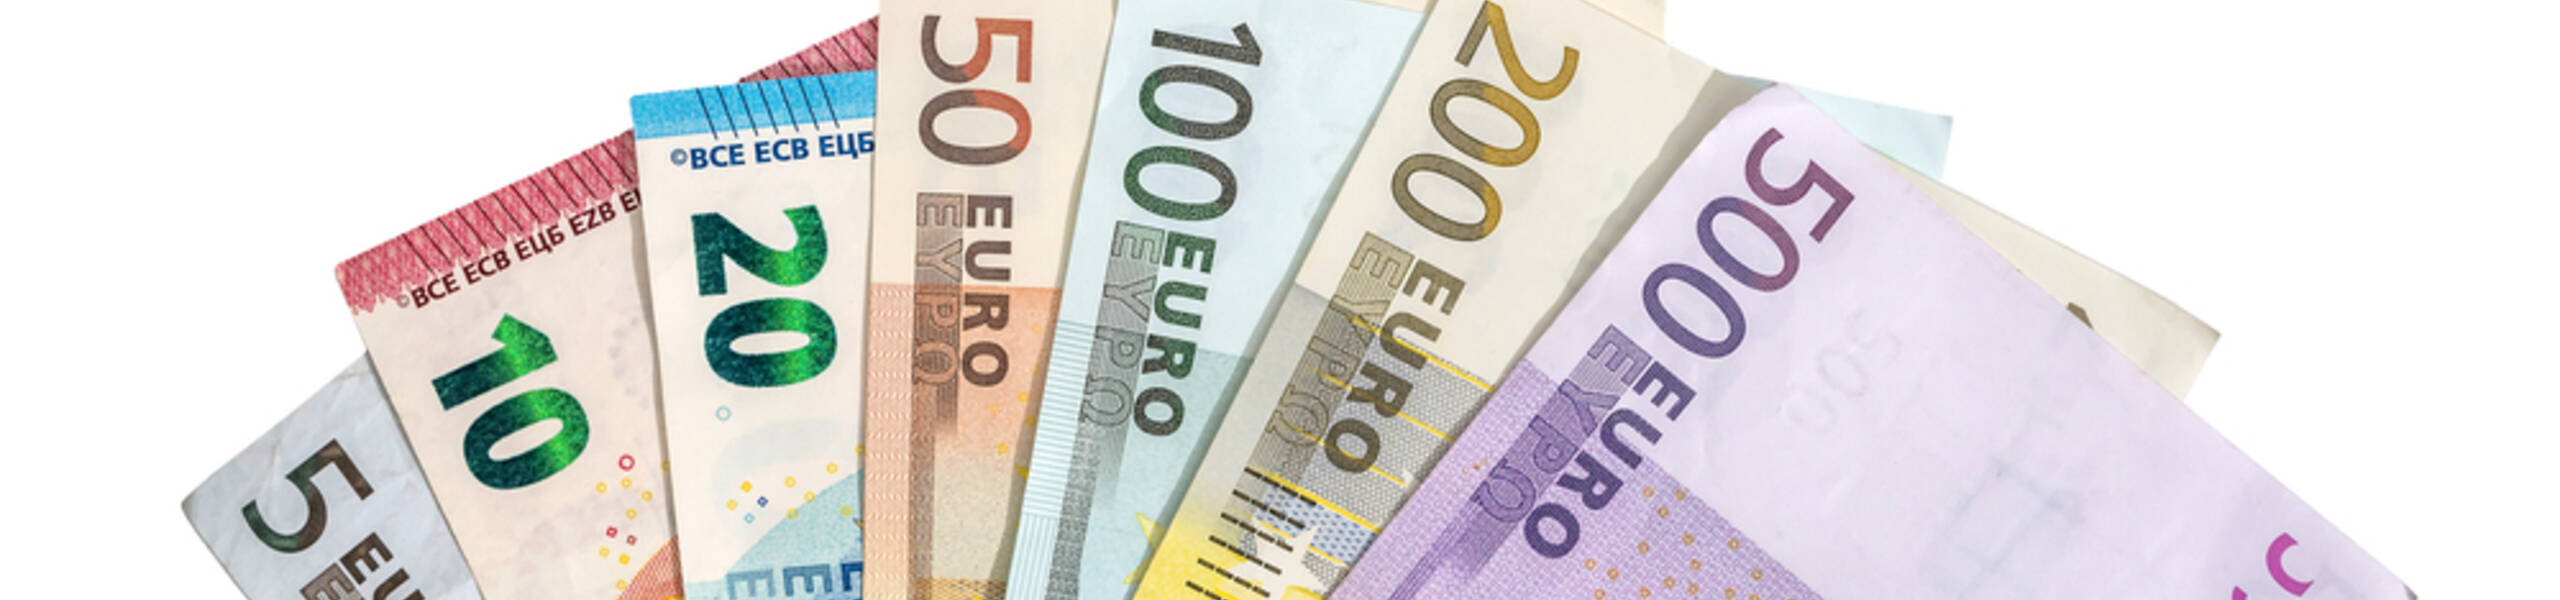 EUR / USD यूरोपीय संघ के सुधार फंड पर सम्मिलित रहता है